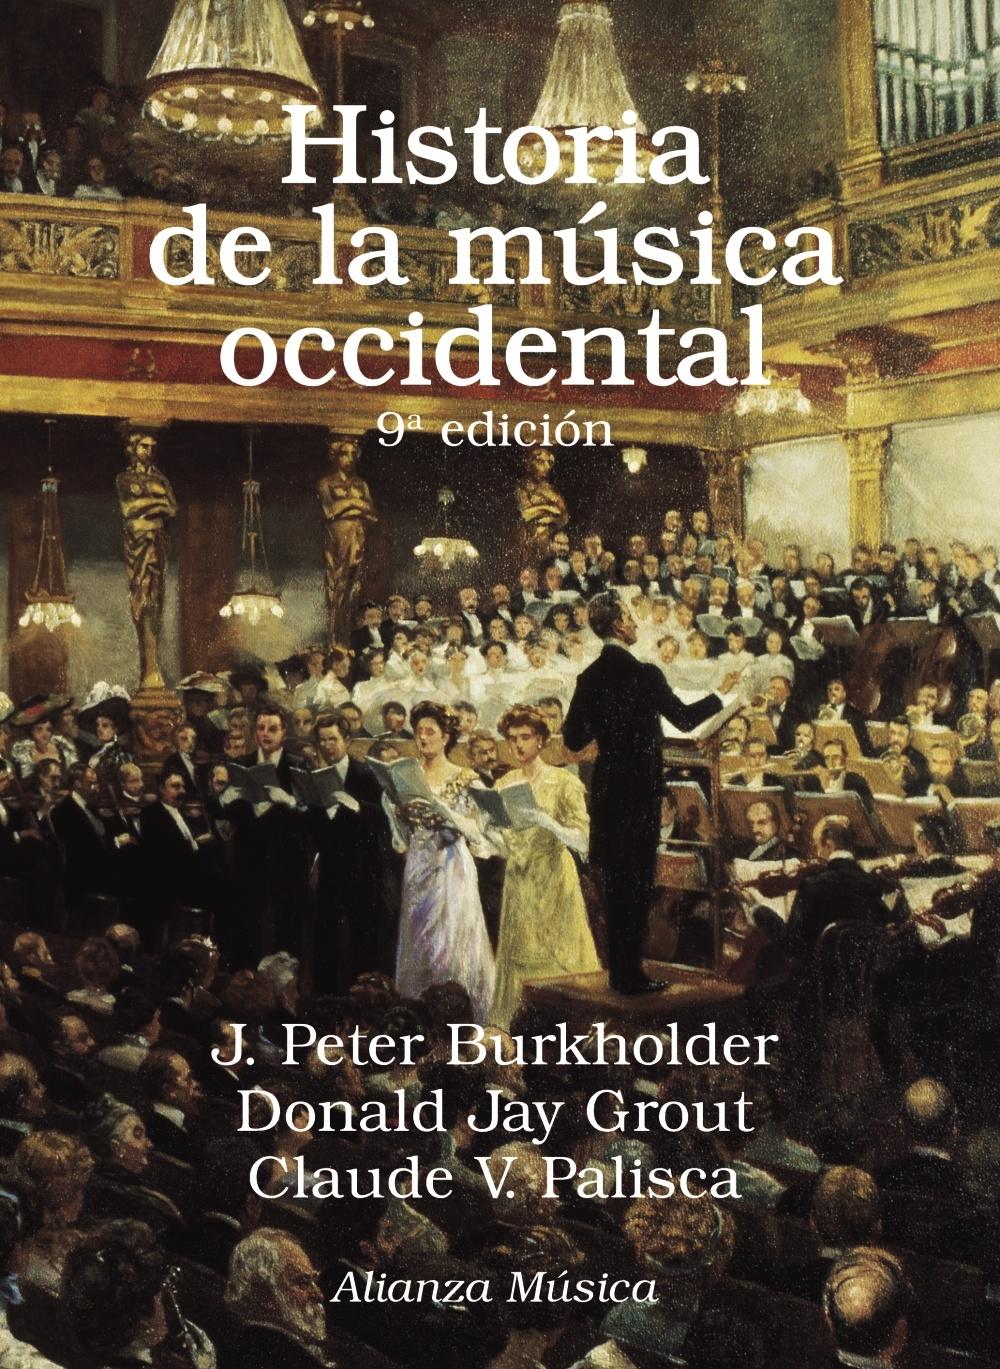 HISTORIA DE LA MUSICA OCCIDENTAL "Novena edición"